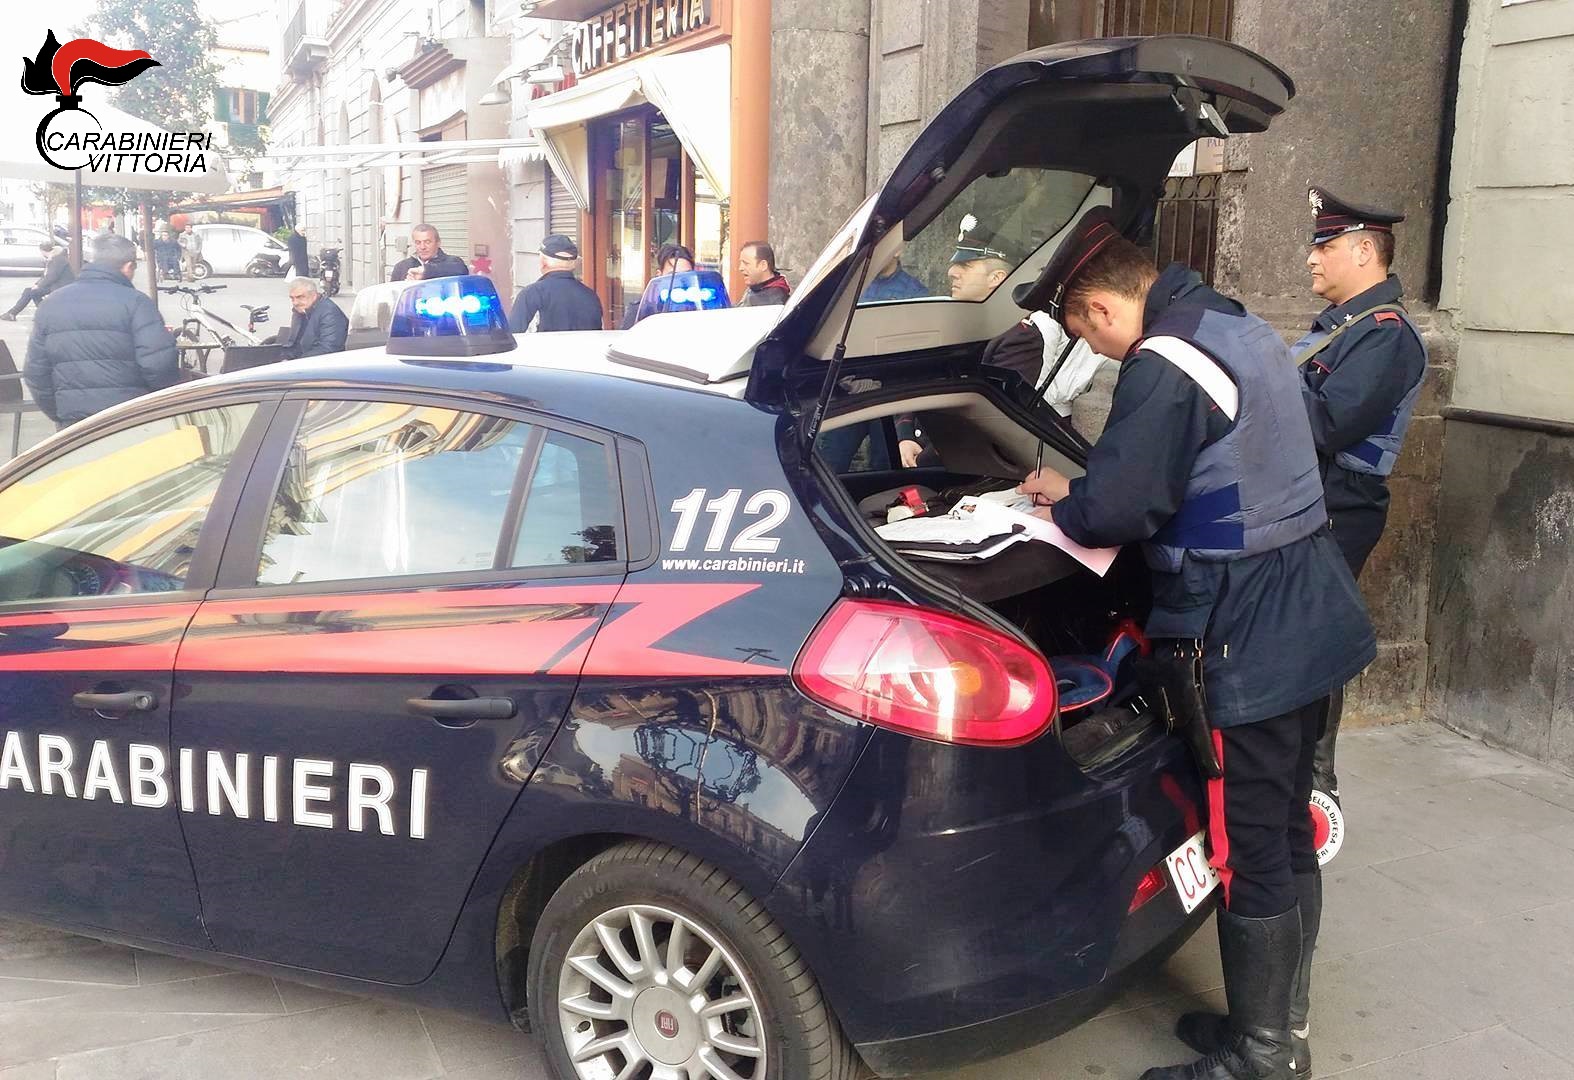  Vittoria – Furto, lesioni e spaccio: carabinieri arrestano tre pregiudicati